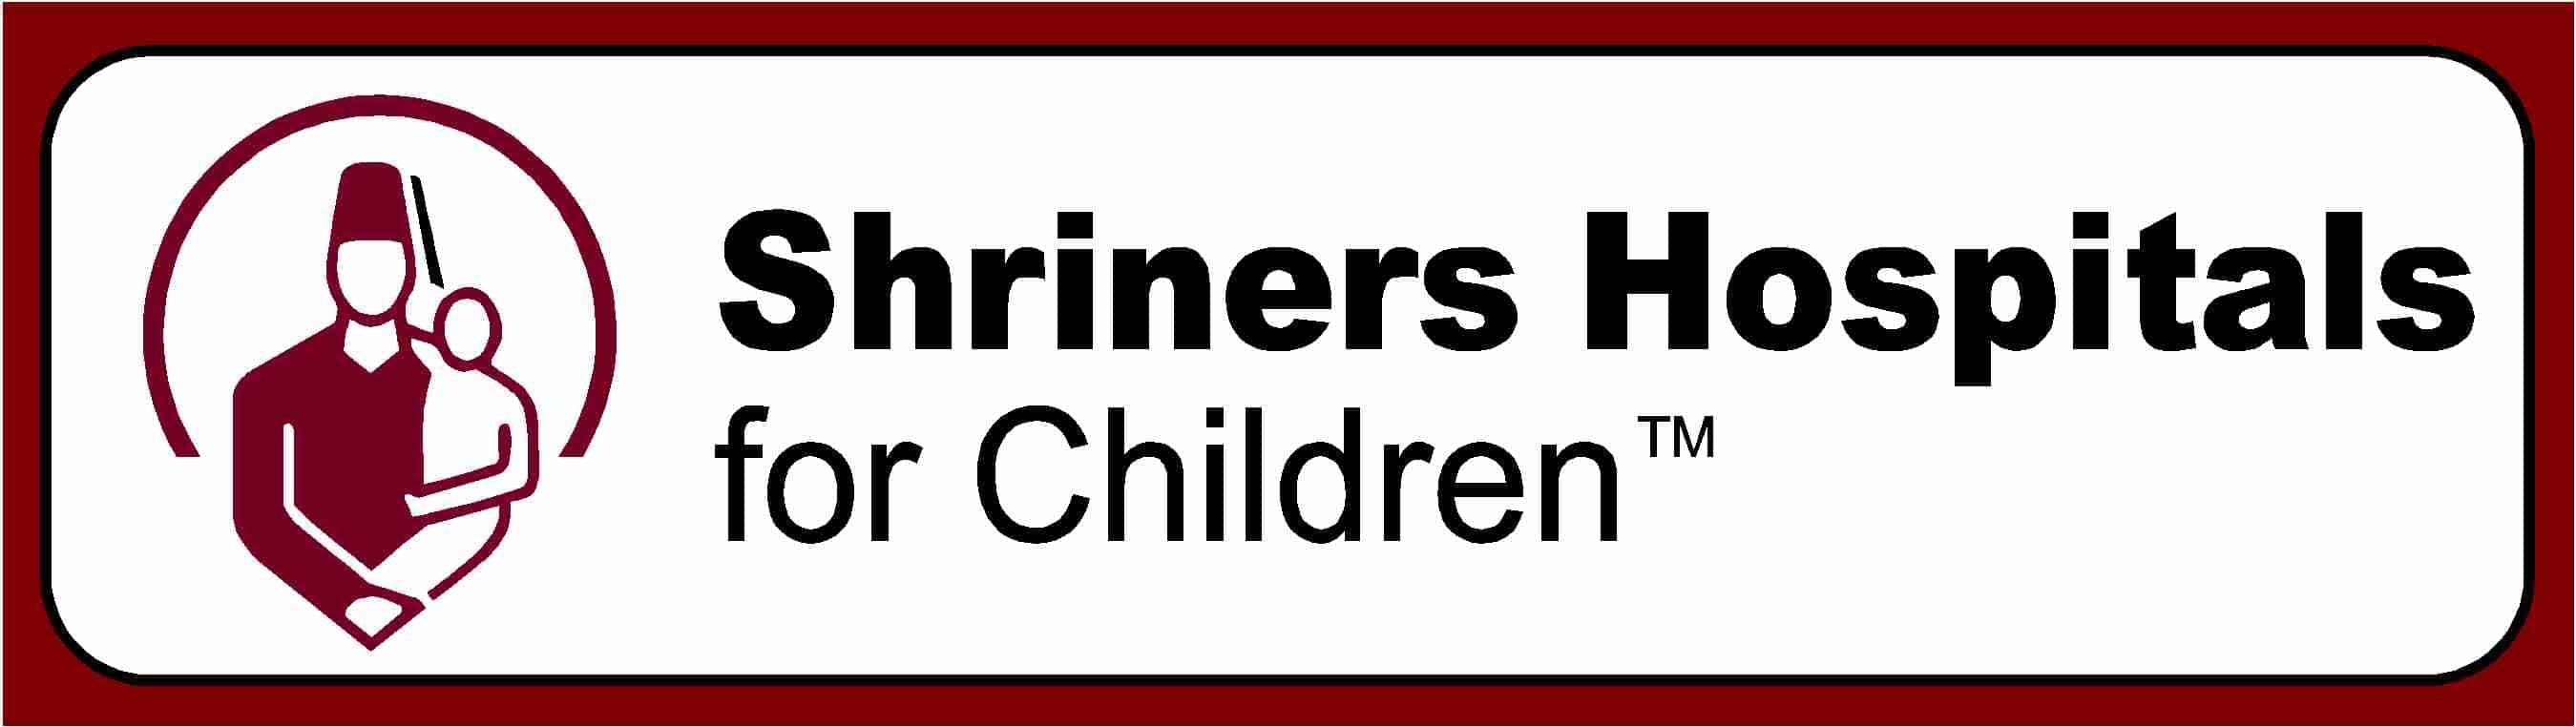 Shriners Children's Hospital logo